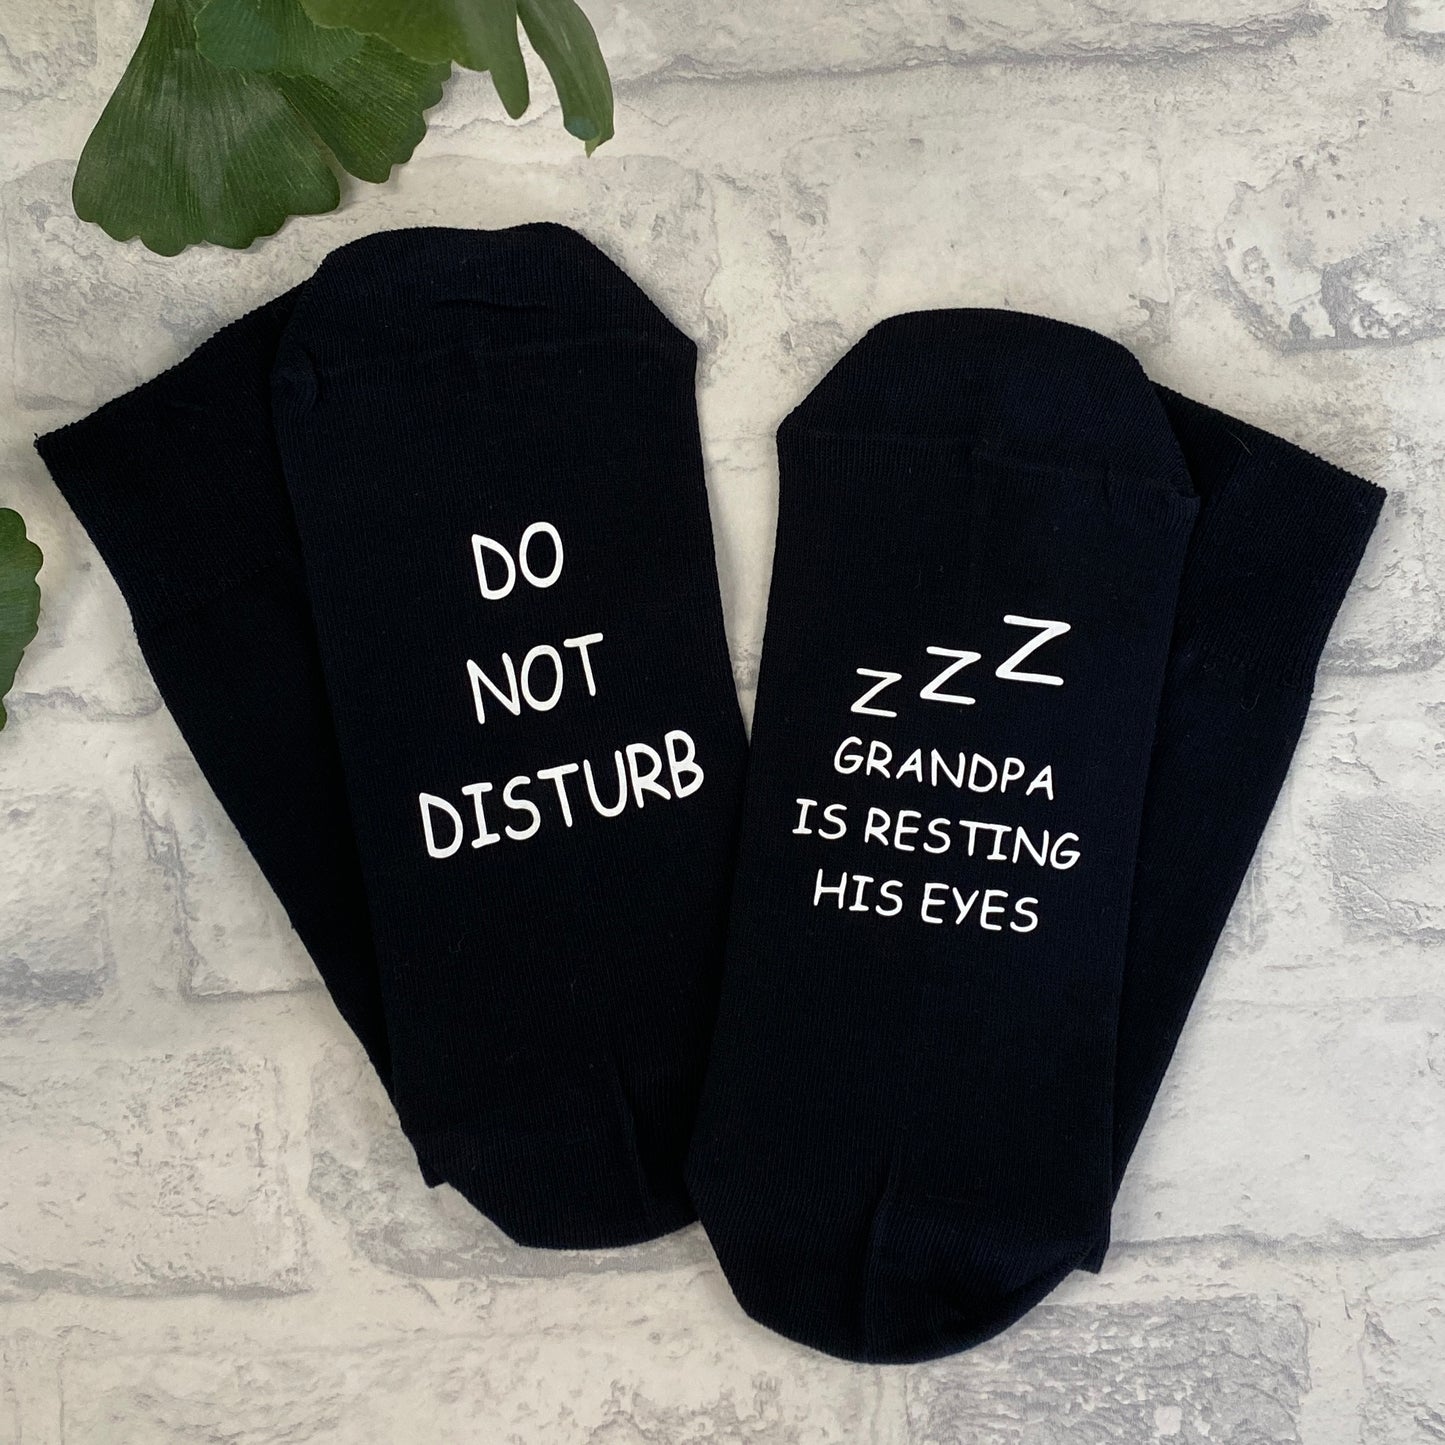 Do not disturb Socks